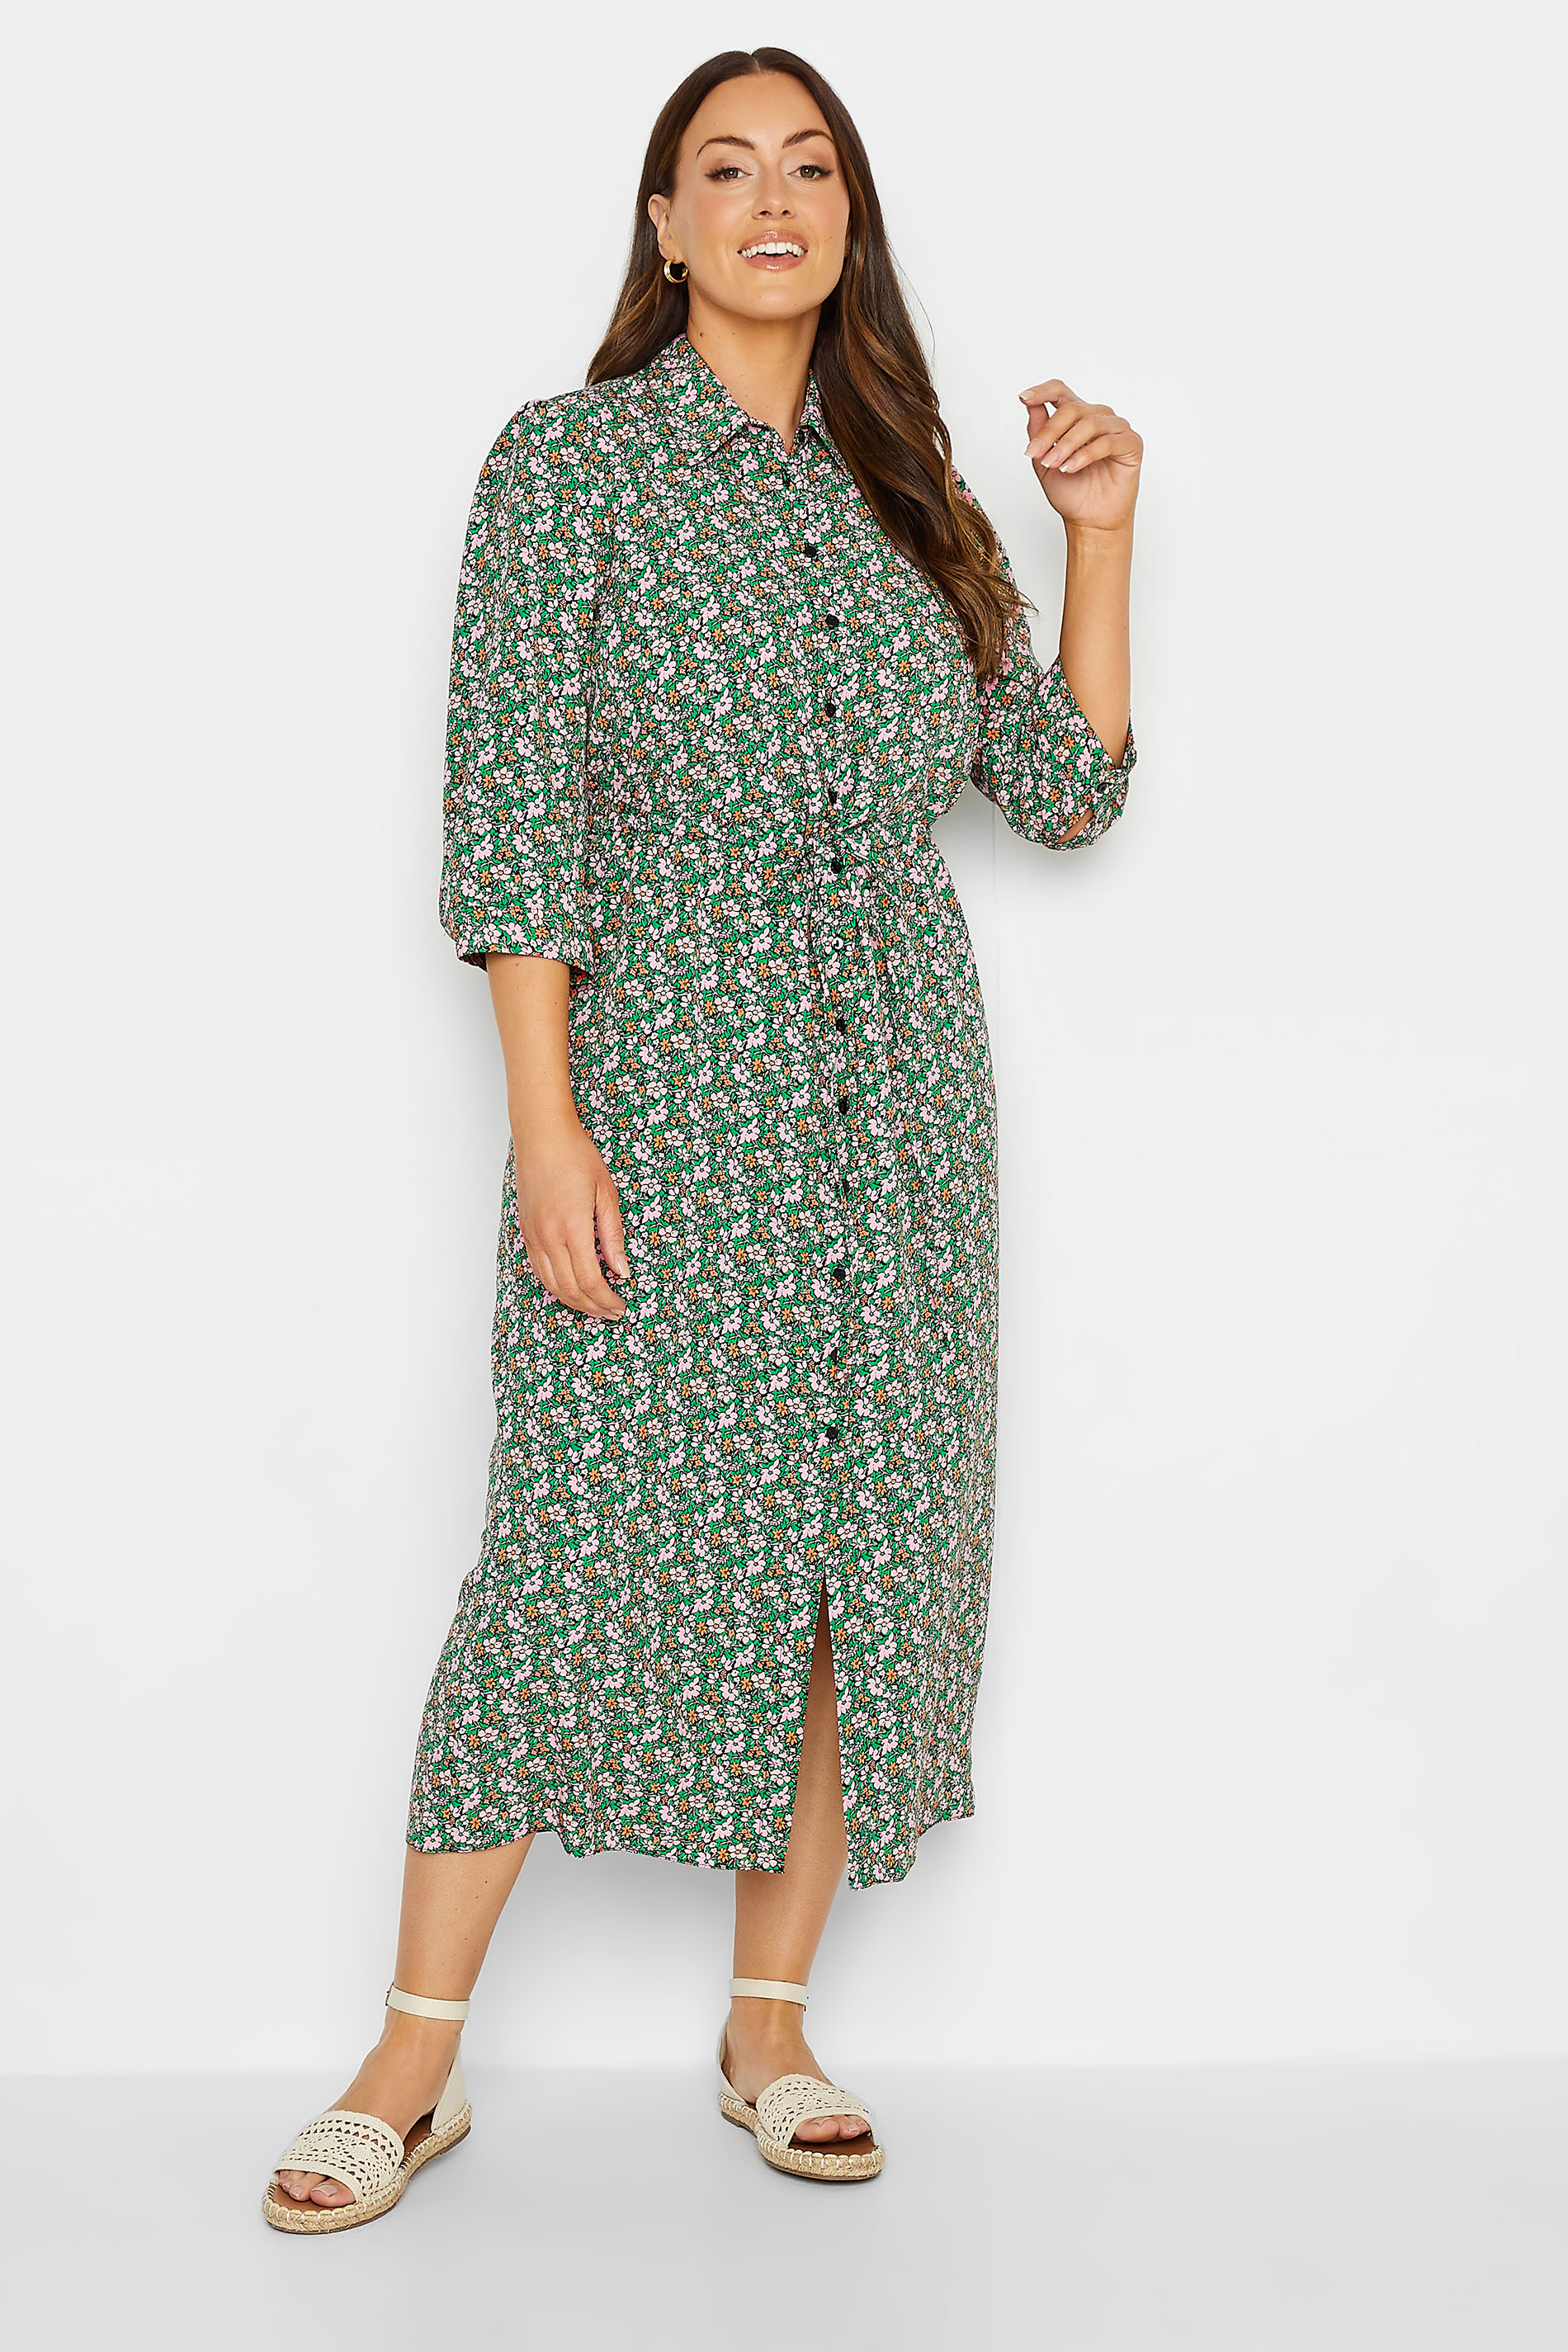 M&Co Women's Green Floral Print Midi Shirt Dress | M&Co 2